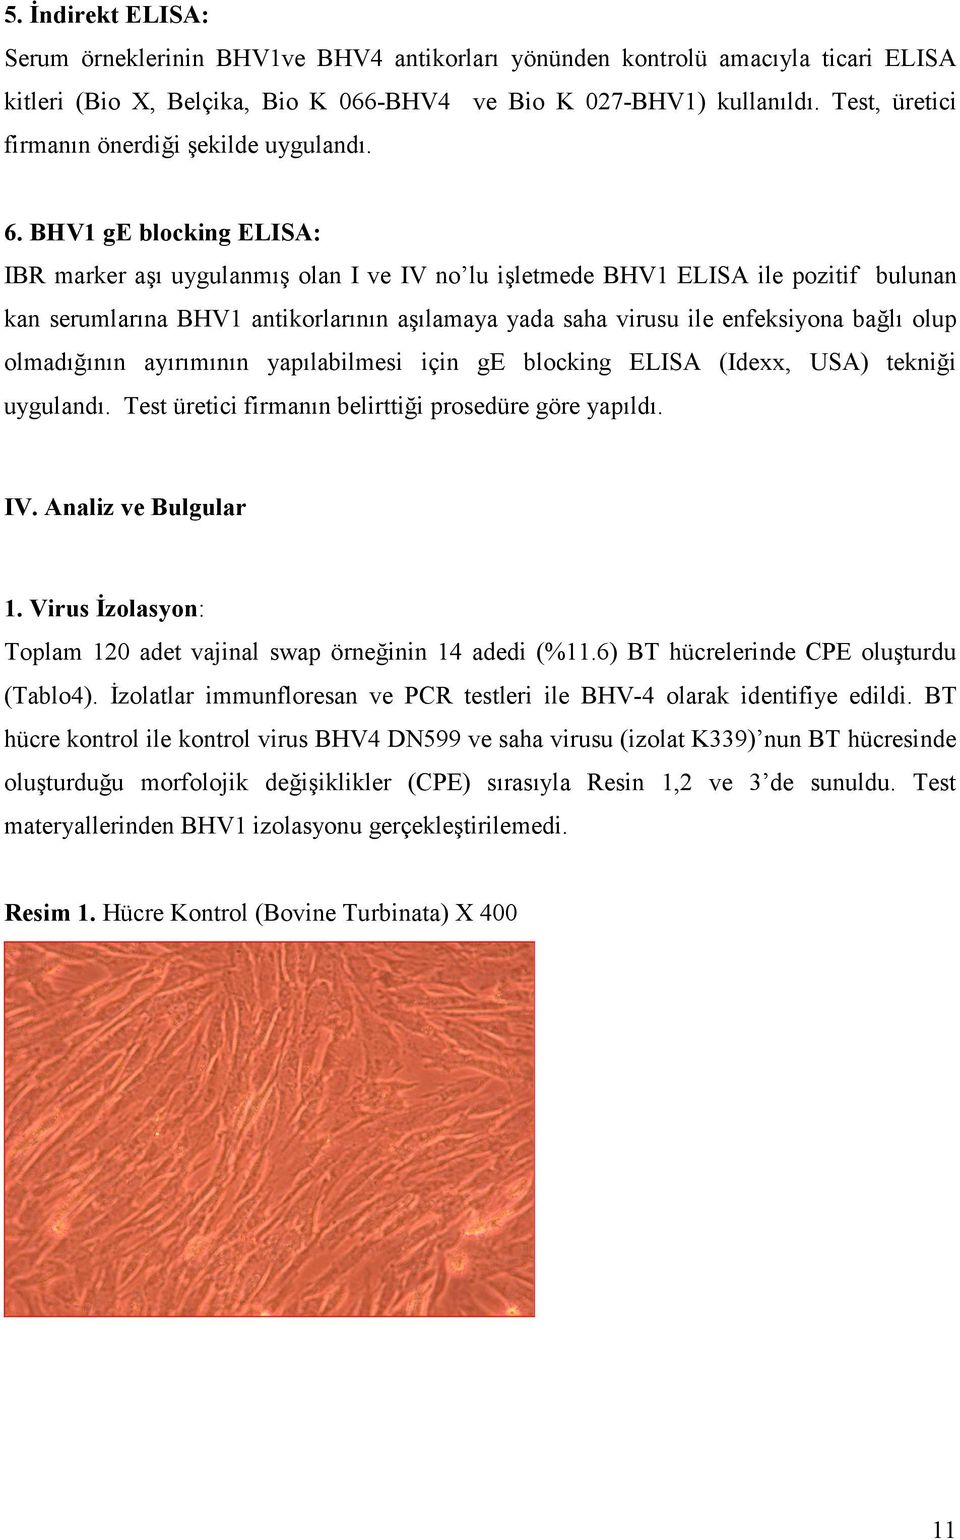 BHV1 ge blocking ELISA: IBR marker aşı uygulanmış olan I ve IV no lu işletmede BHV1 ELISA ile pozitif bulunan kan serumlarına BHV1 antikorlarının aşılamaya yada saha virusu ile enfeksiyona bağlı olup